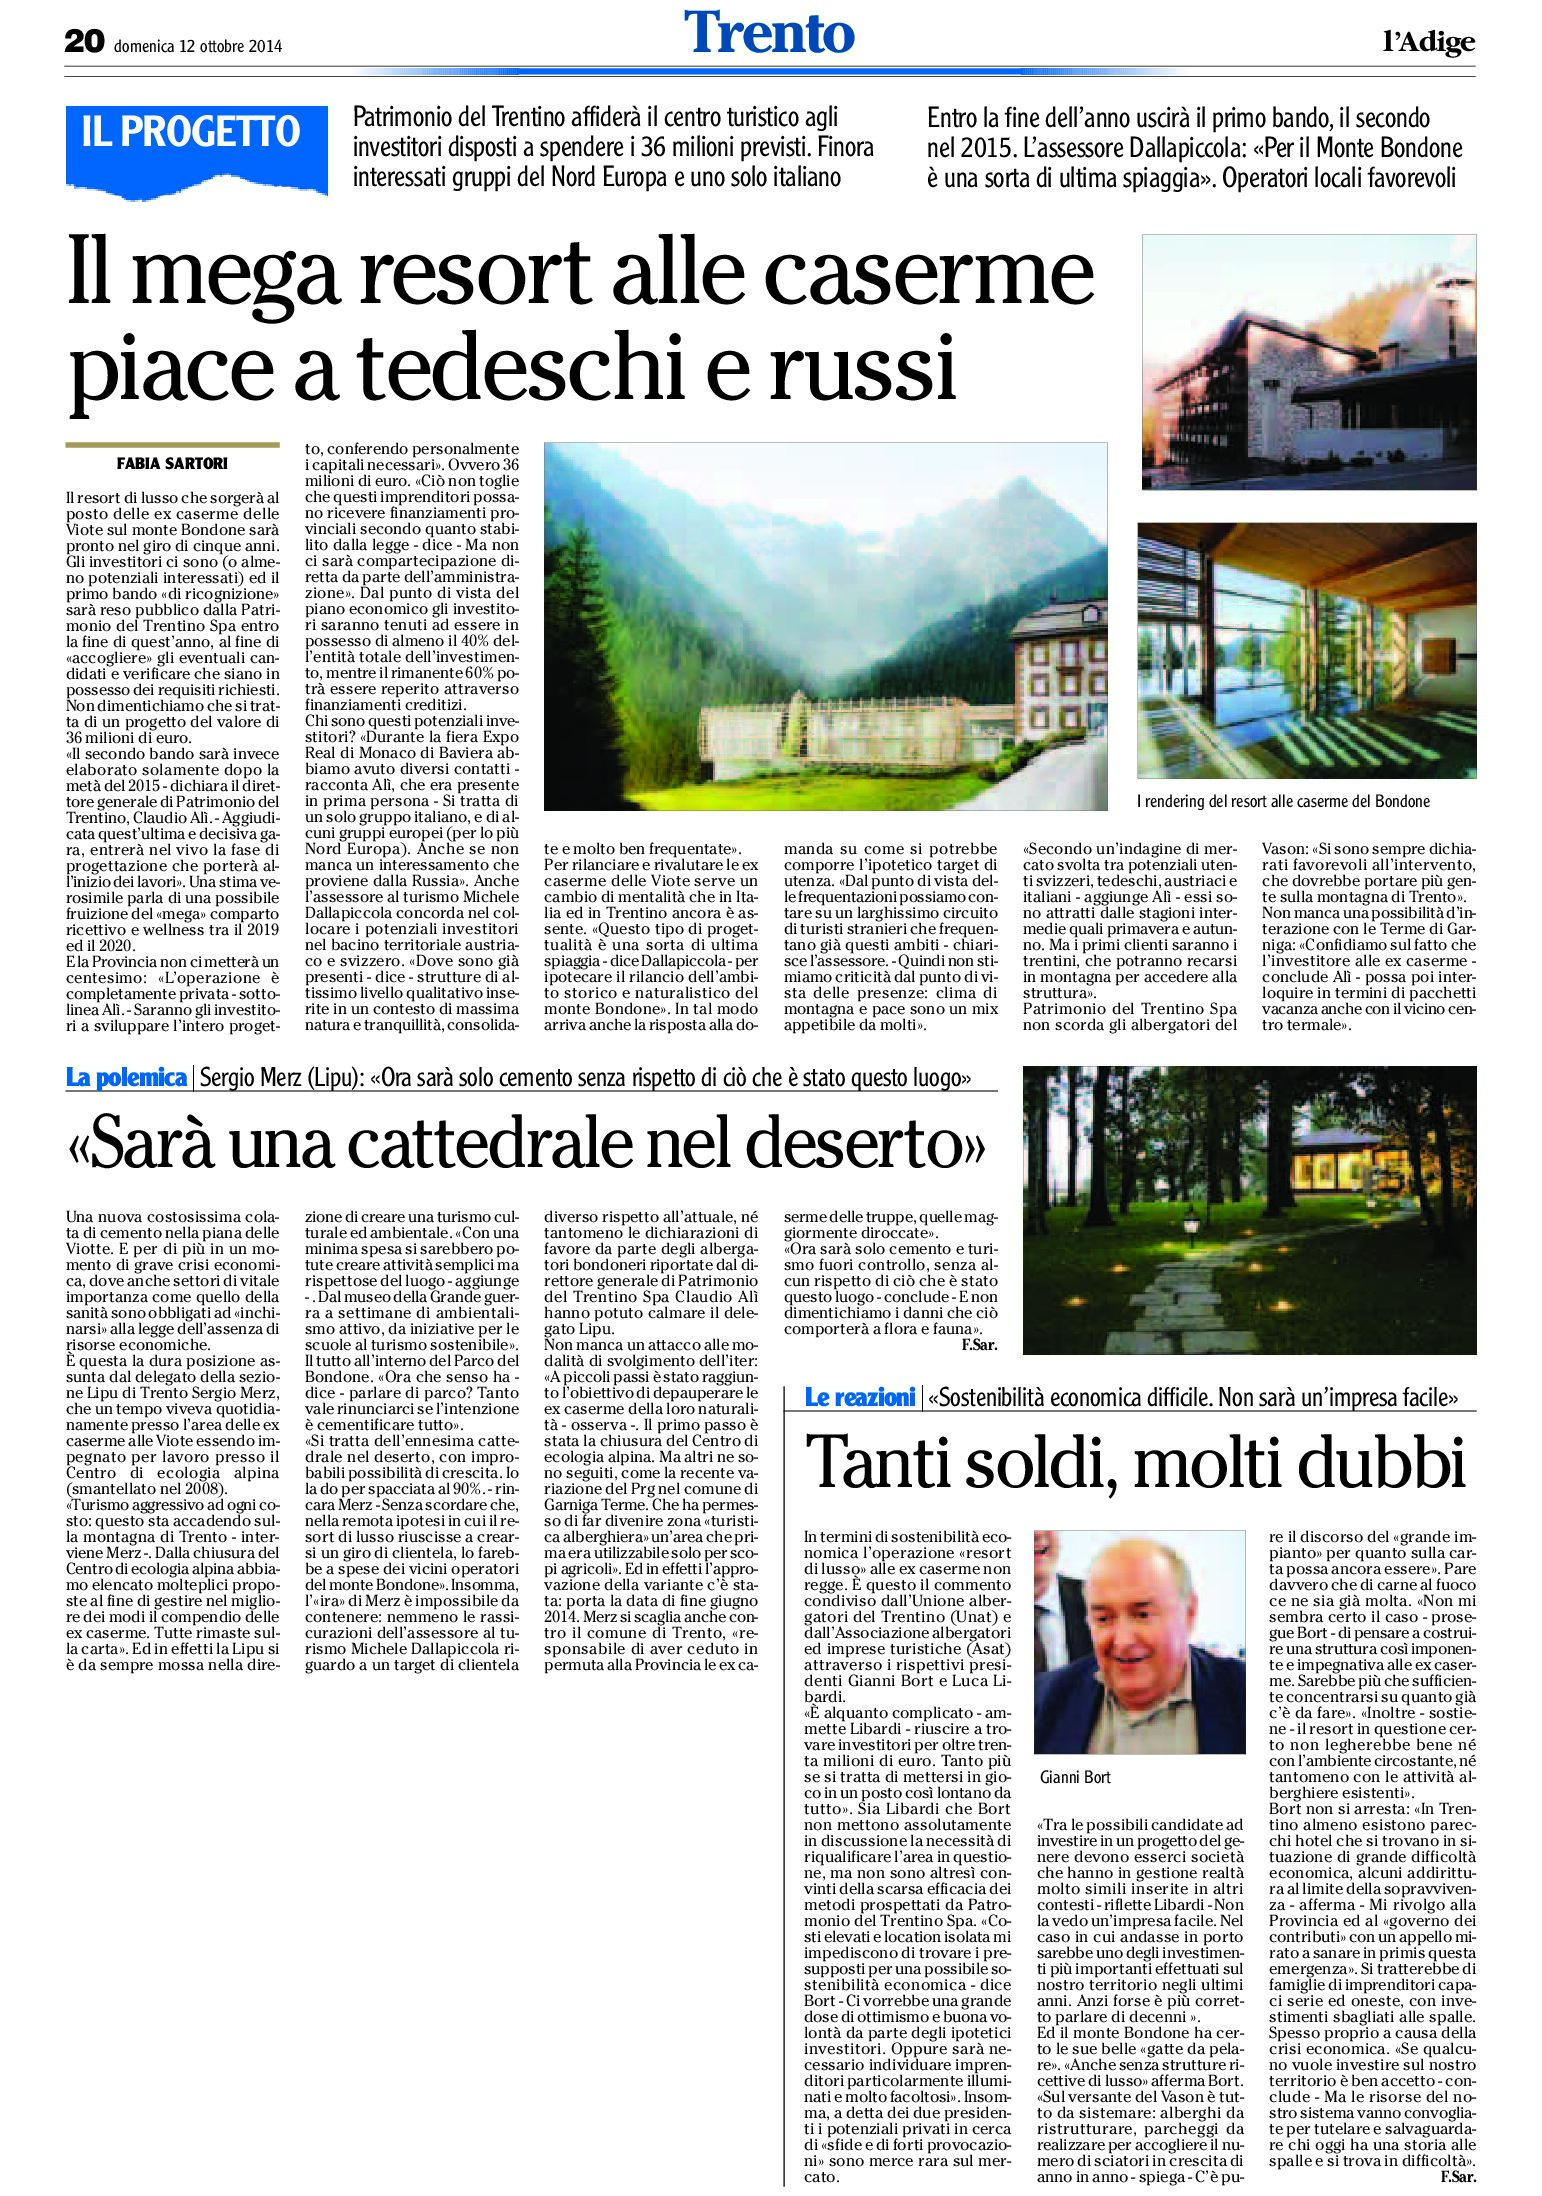 Trento, Bondone: il mega resort, sarà una cattedrale nel deserto. Piace a tedeschi e russi,